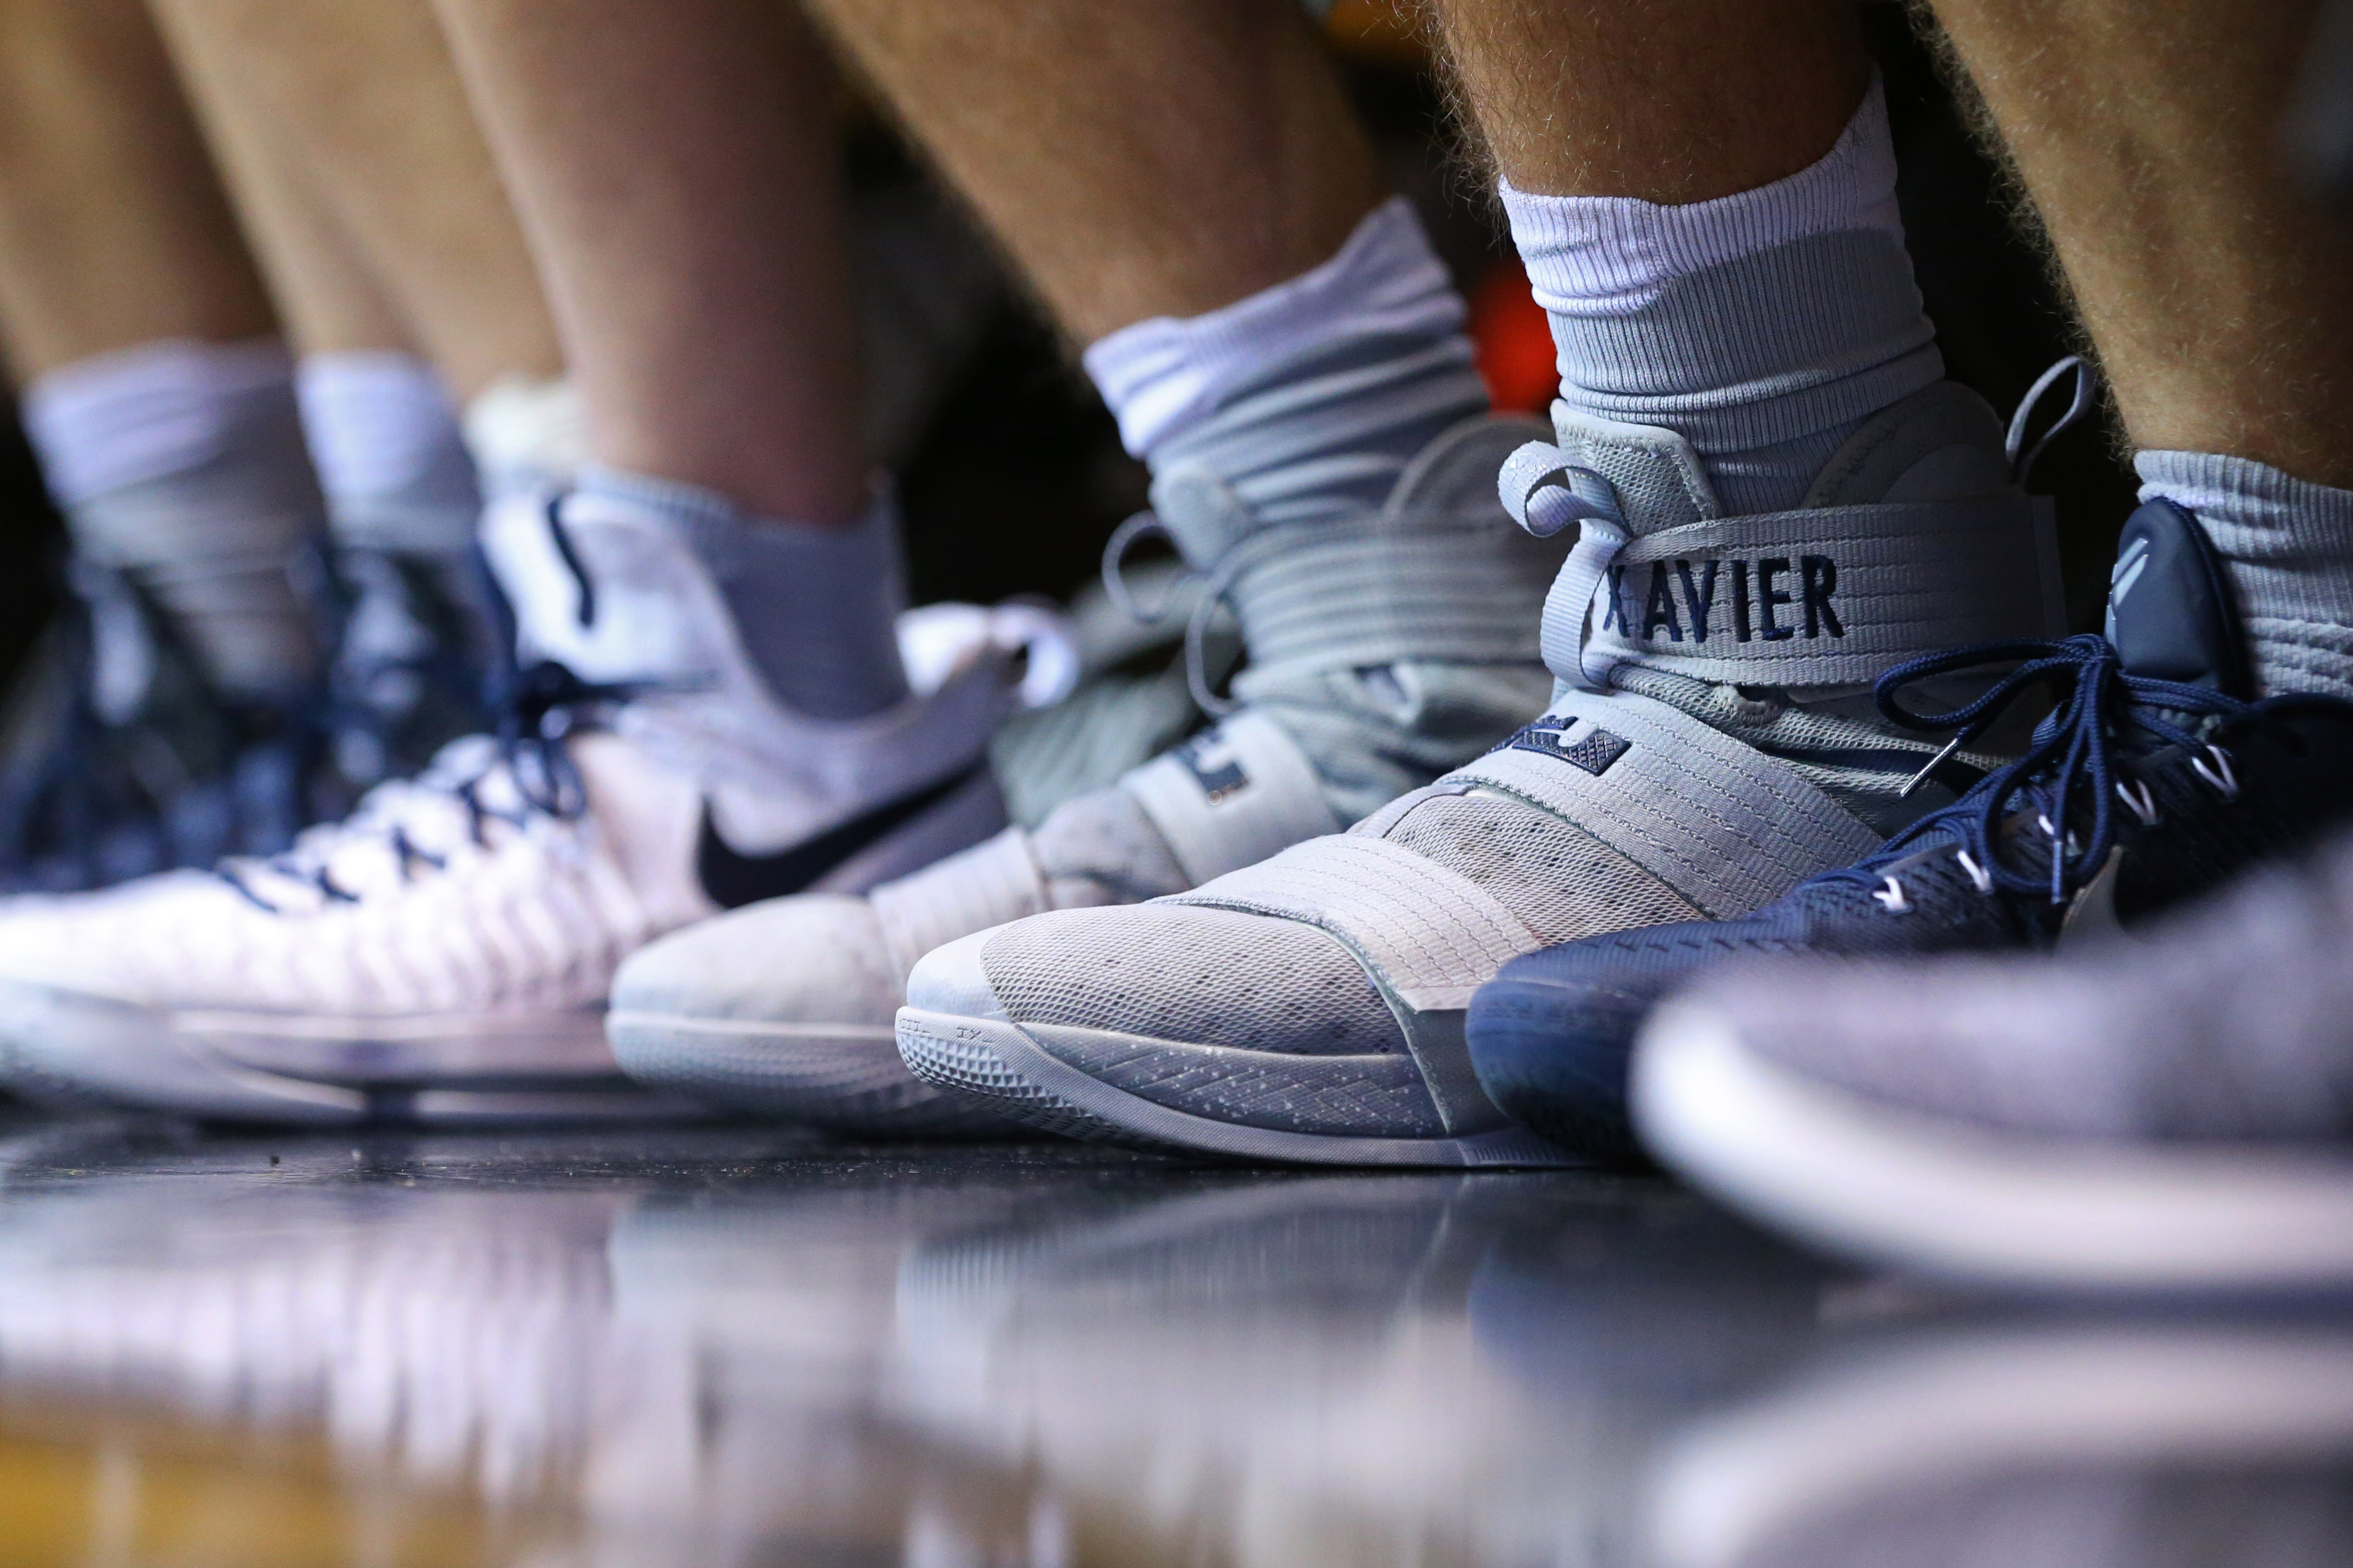 NCAA Basketball: Xavier at Cincinnati